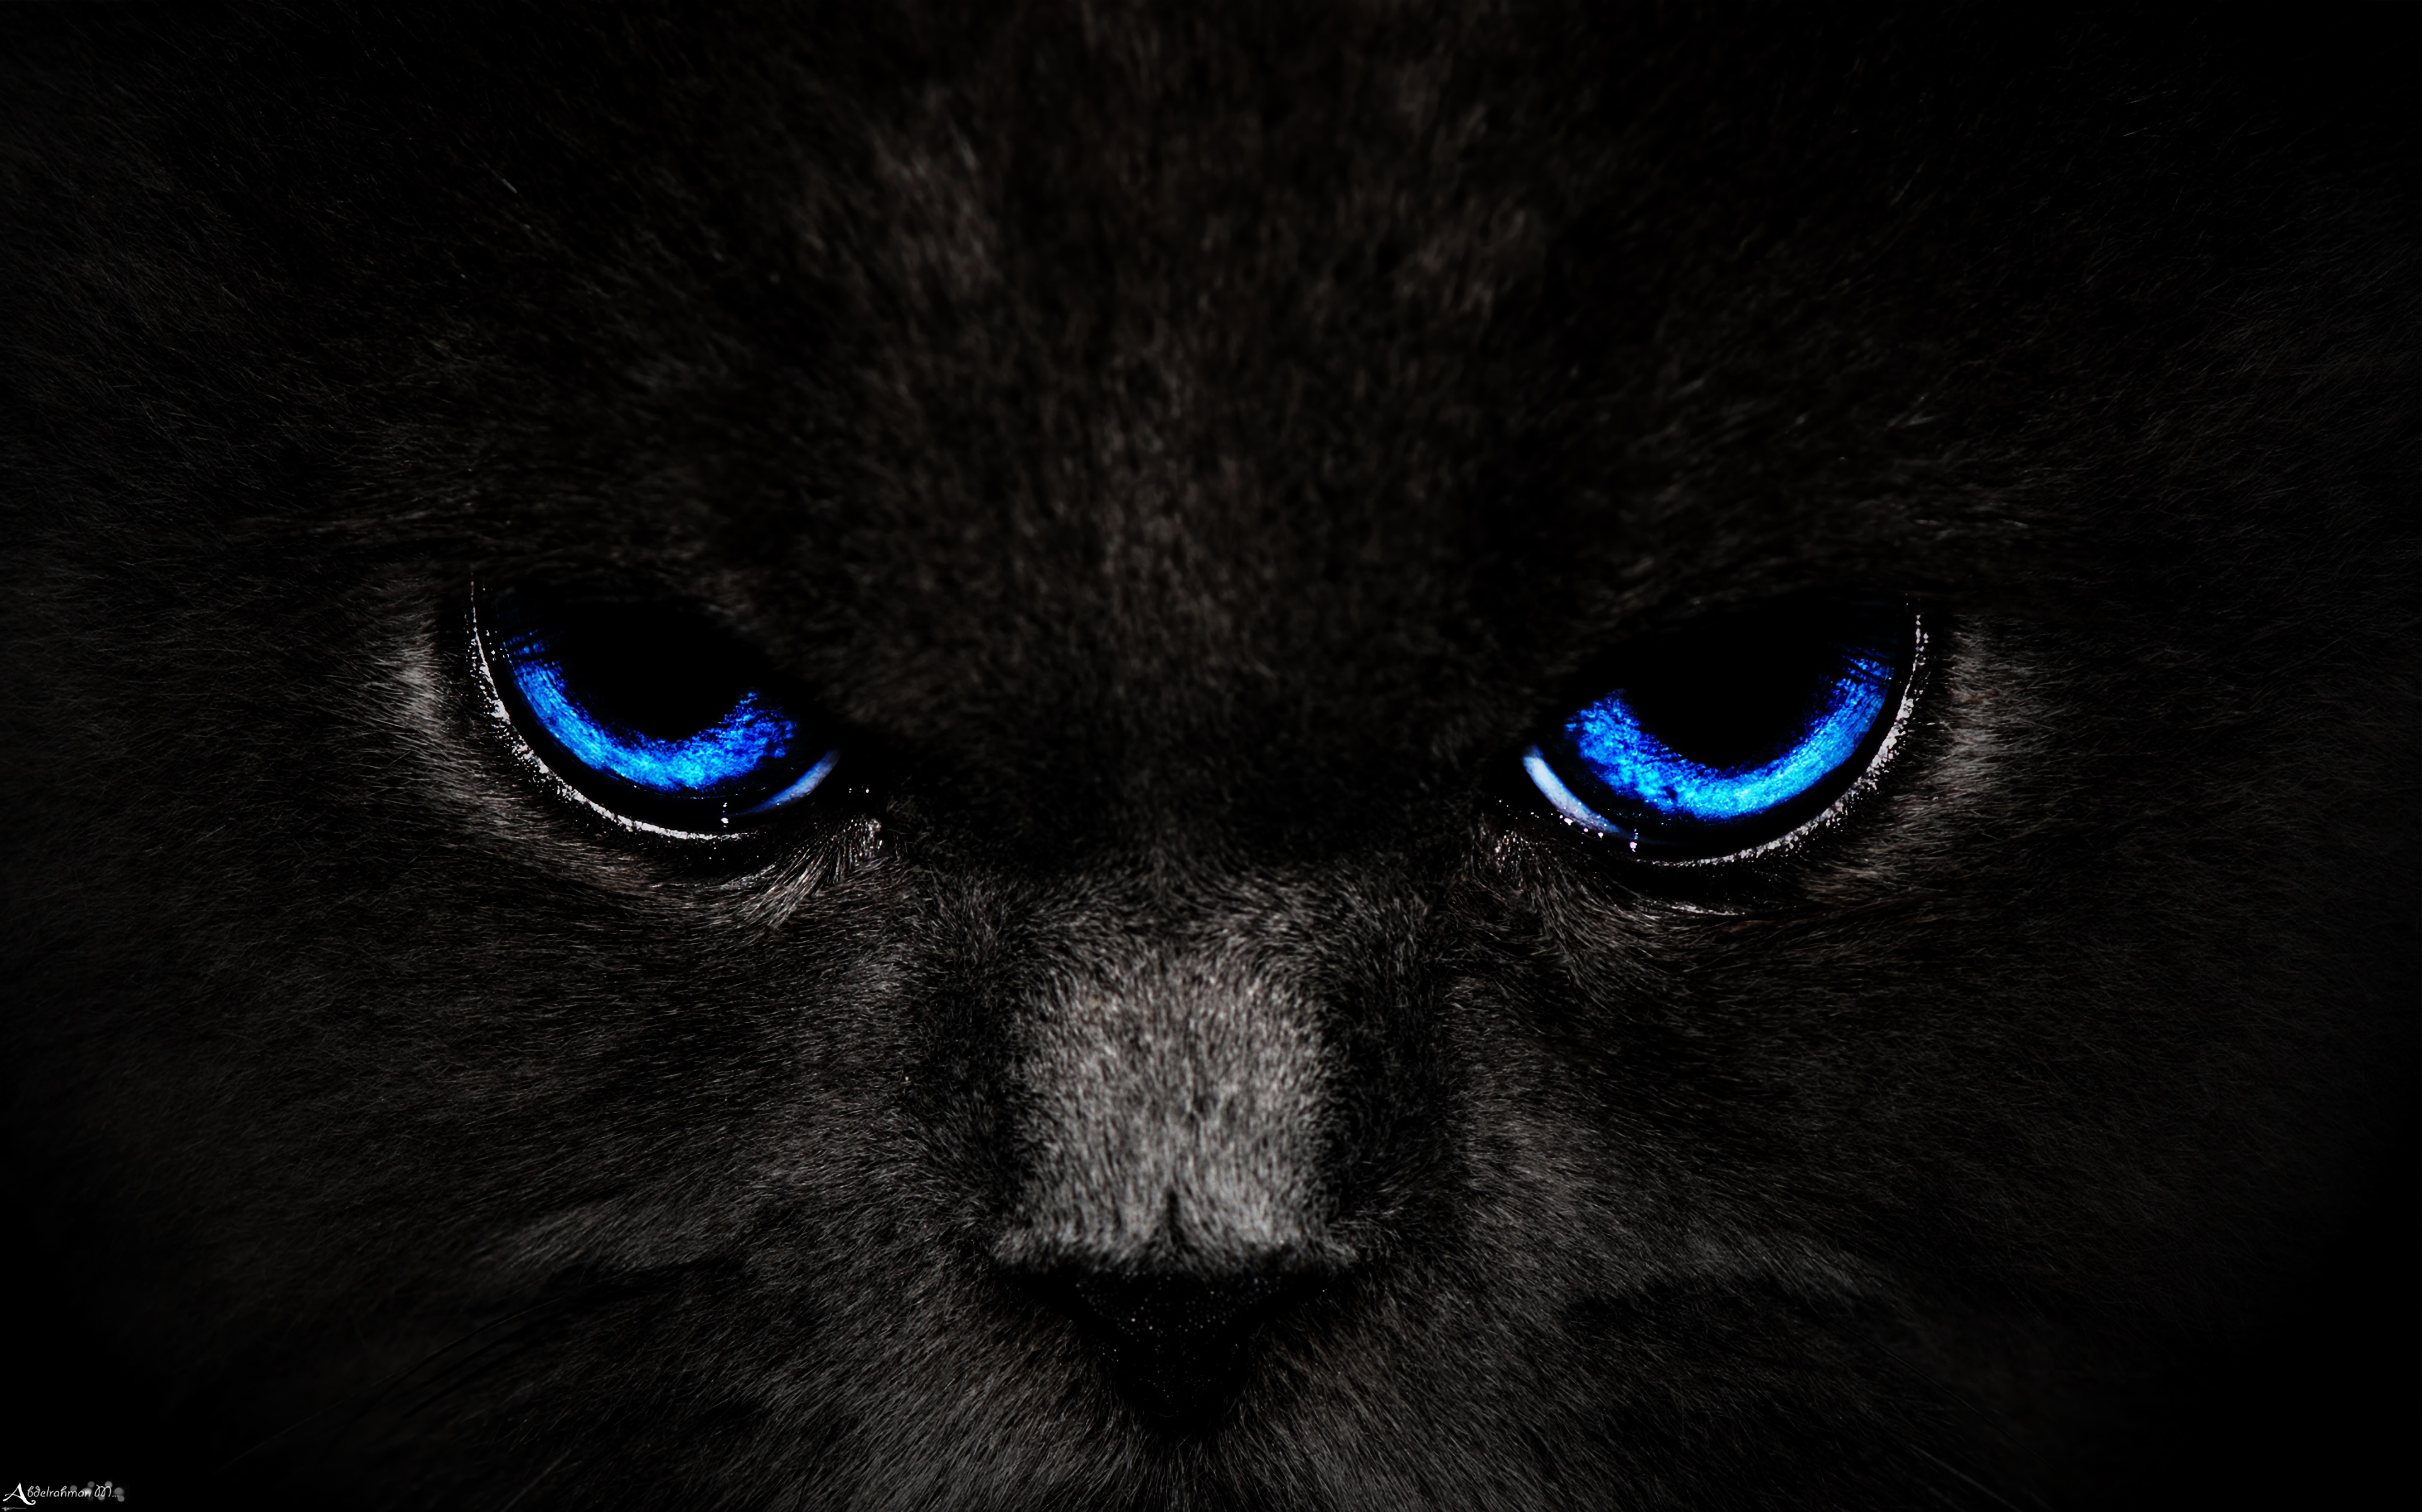 Fondos de Pantalla Gato Blanco y Negro Con Ojos Azules, Imágenes y Fotos  Gratis